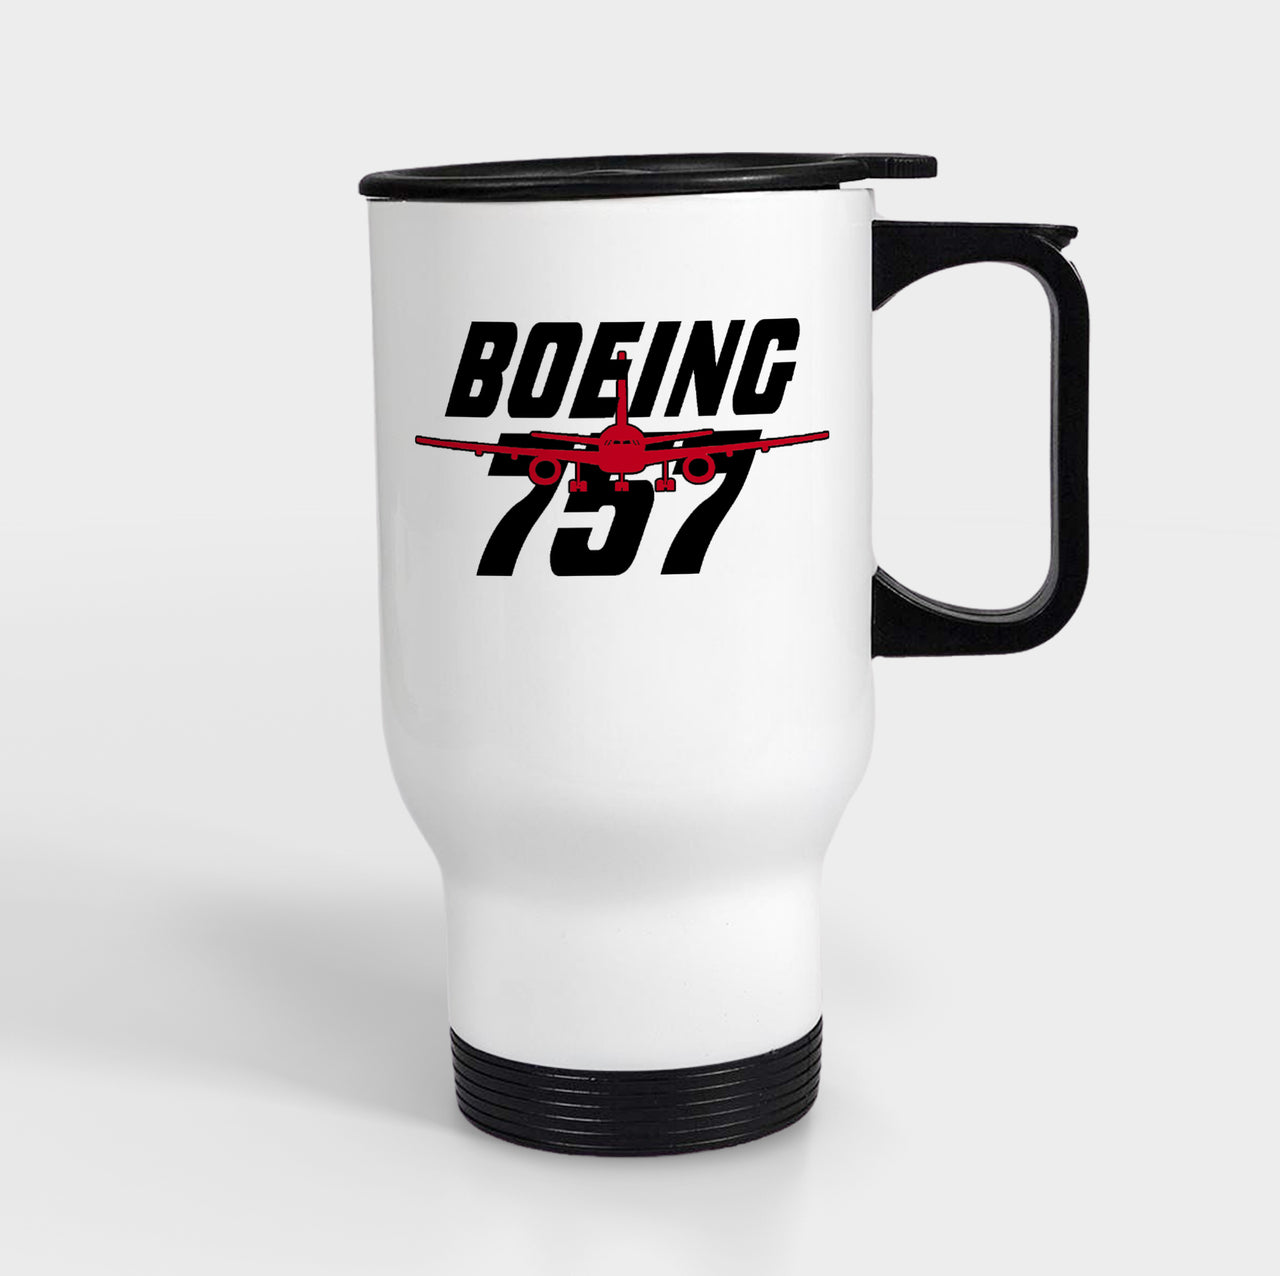 Amazing Boeing 757 Designed Travel Mugs (With Holder)